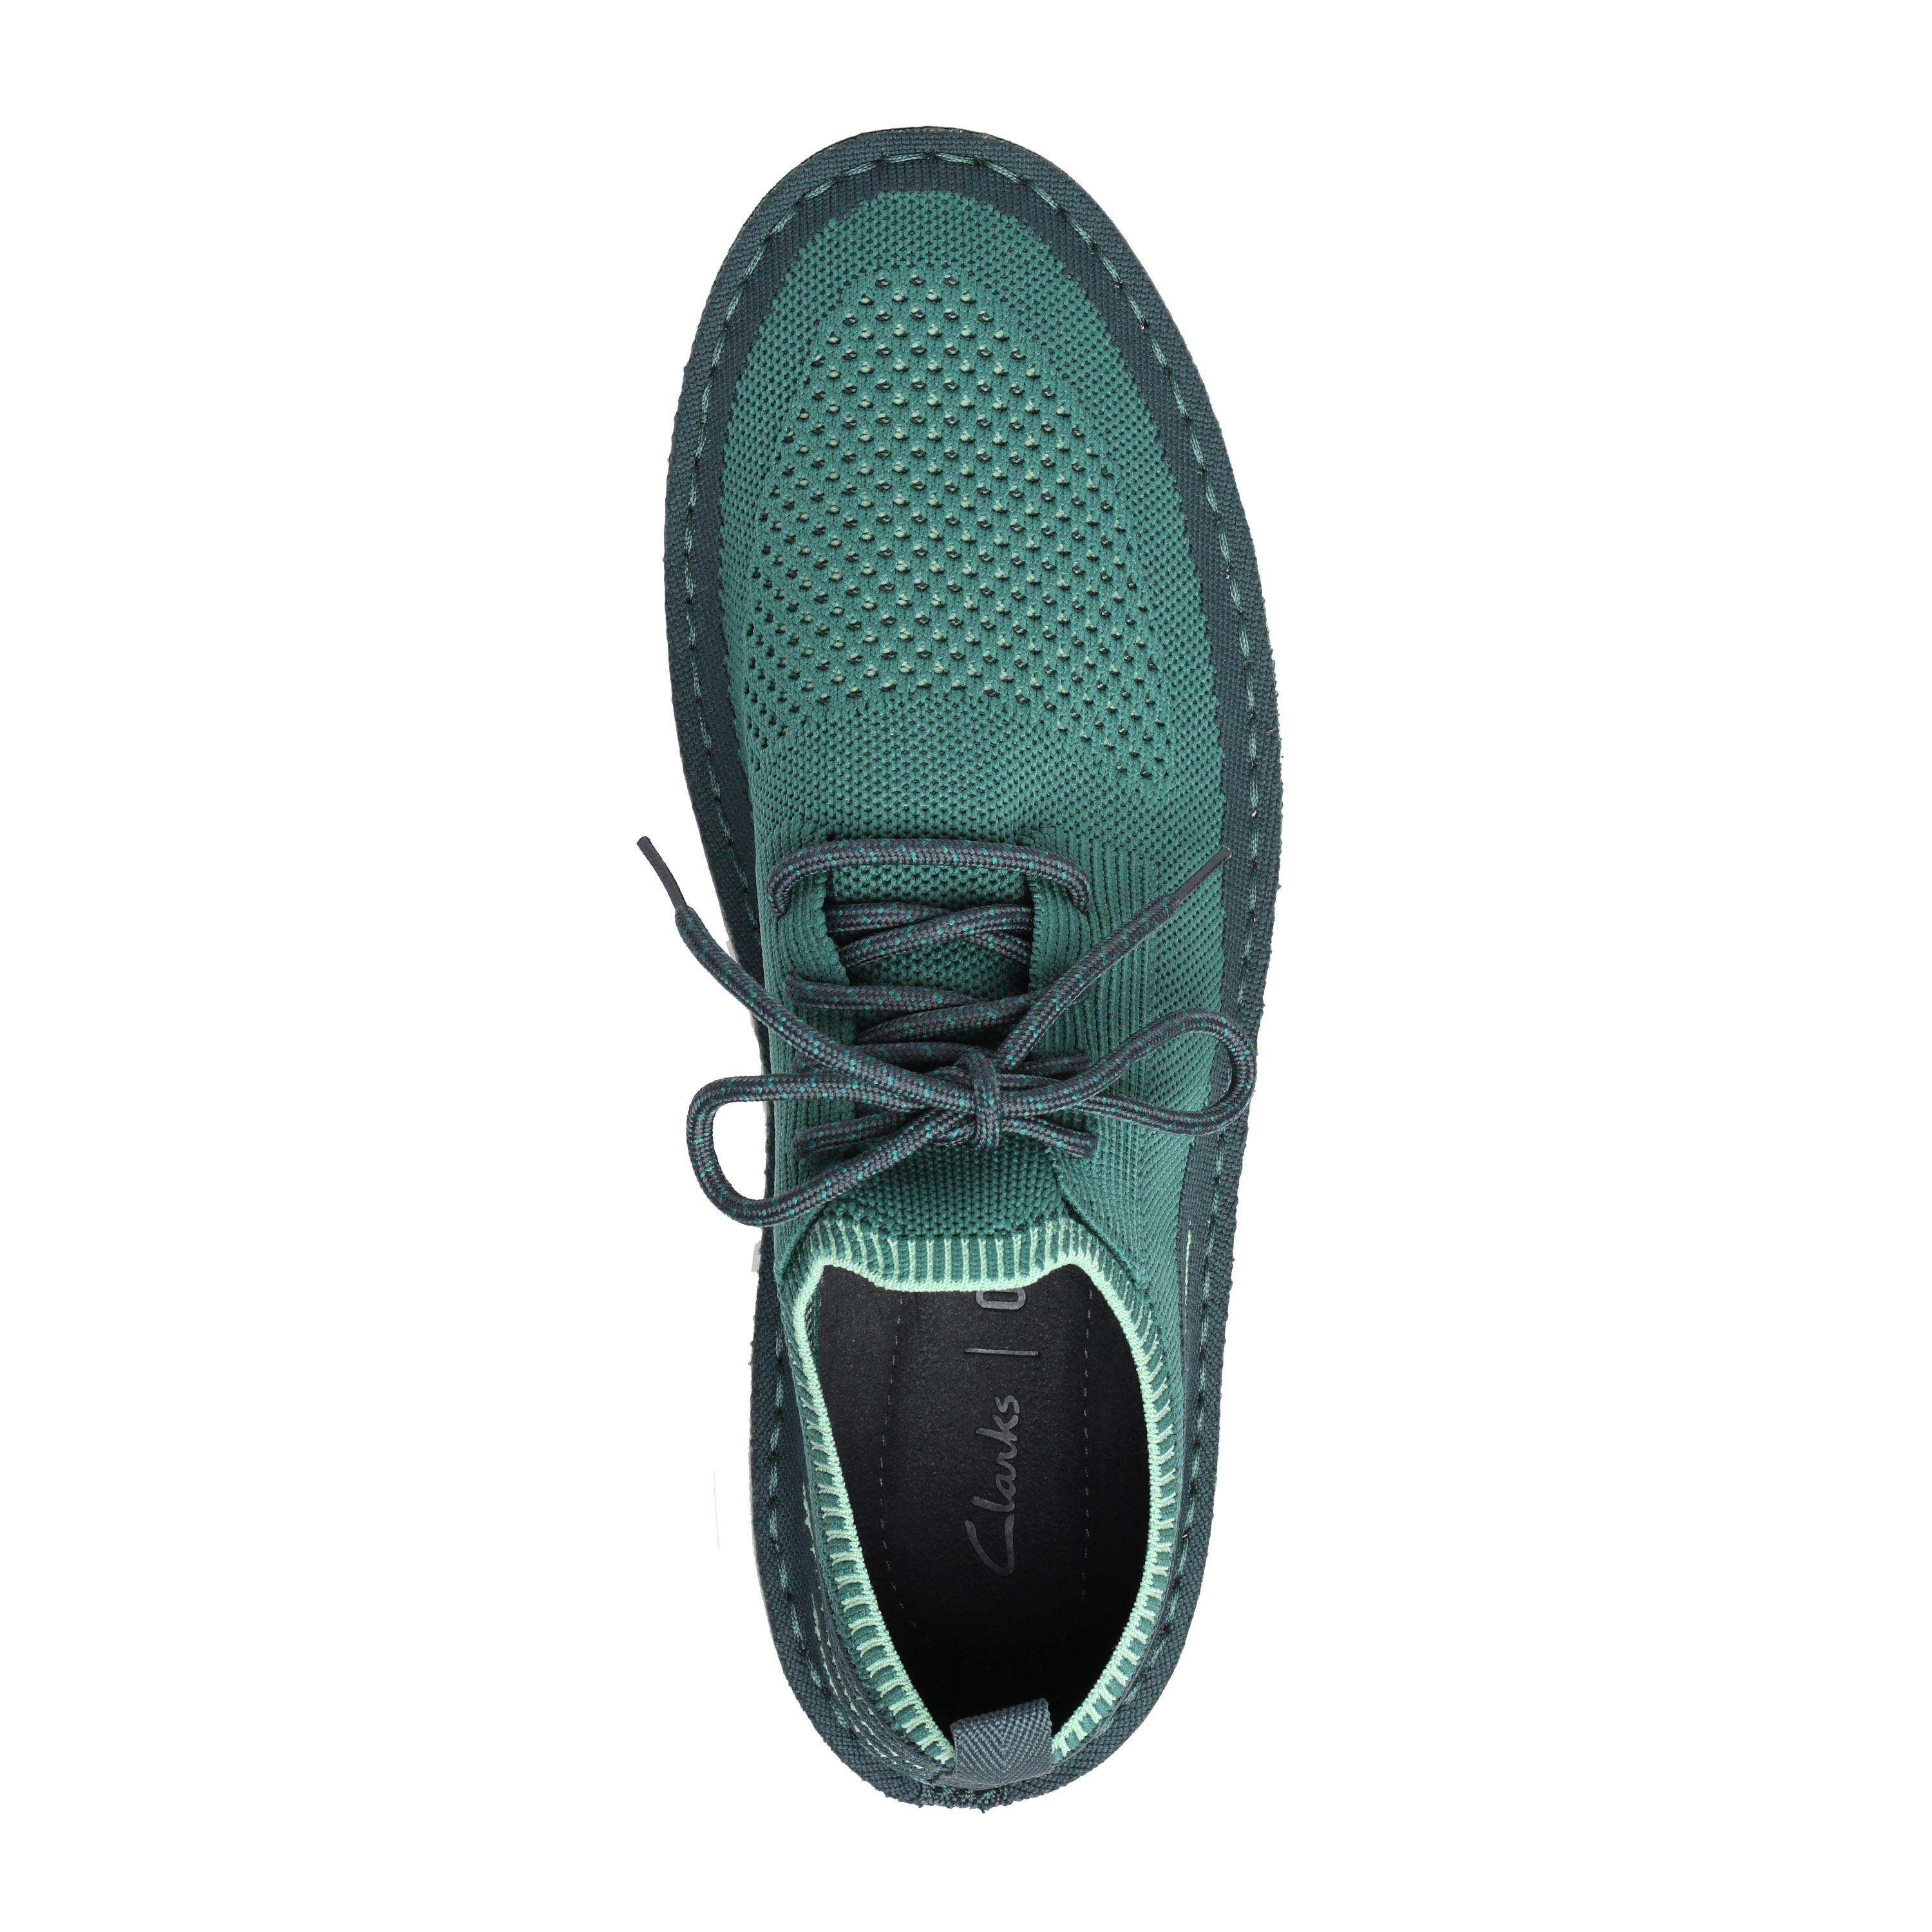 Женские кроссовки Clarks, зеленые, цвет зеленый, размер 39 - фото 3